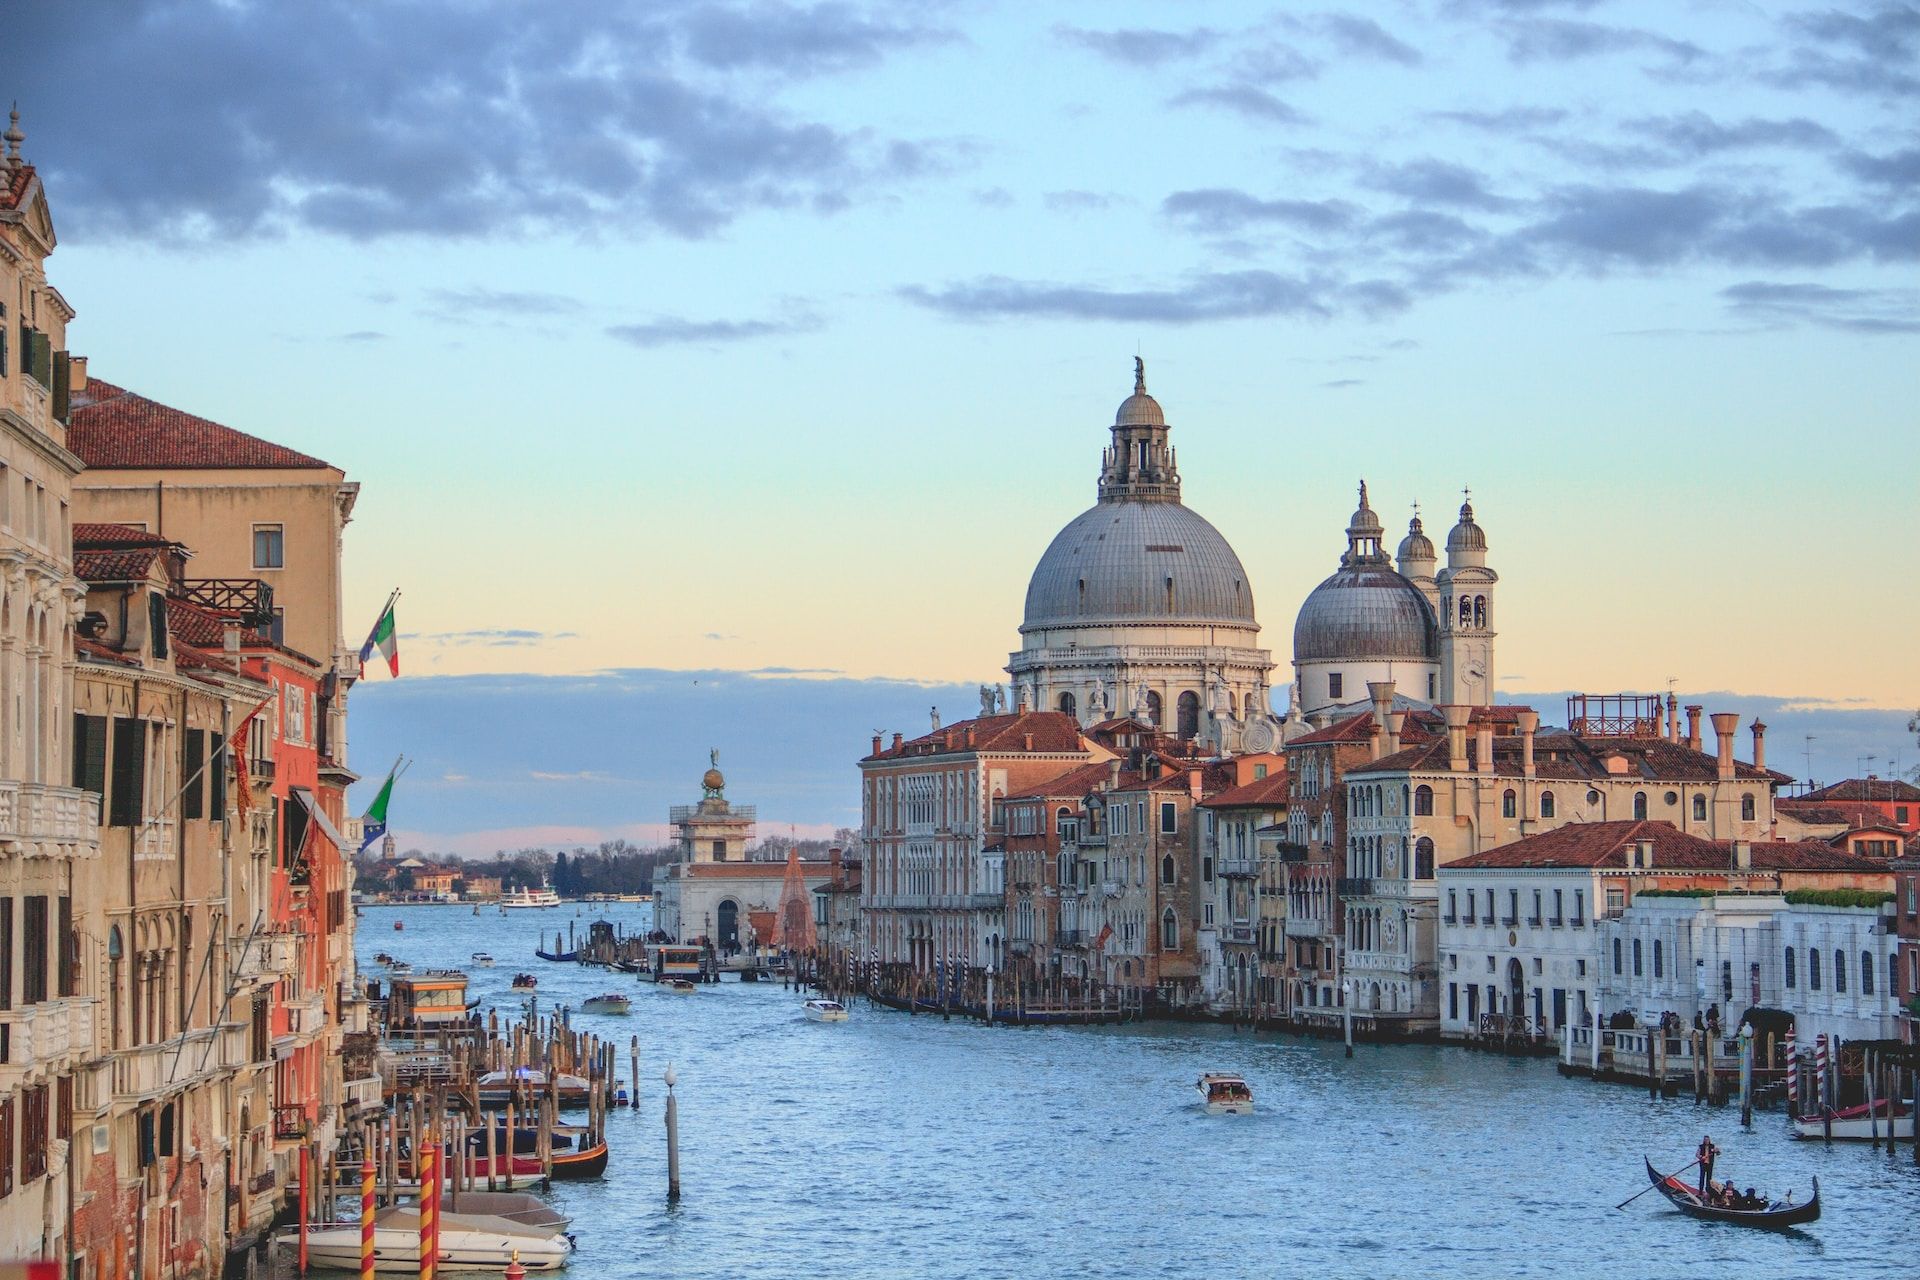 A stunning view of Santa Maria della Salute from the Ponte dell'Accademia bridge, Venice, Italy